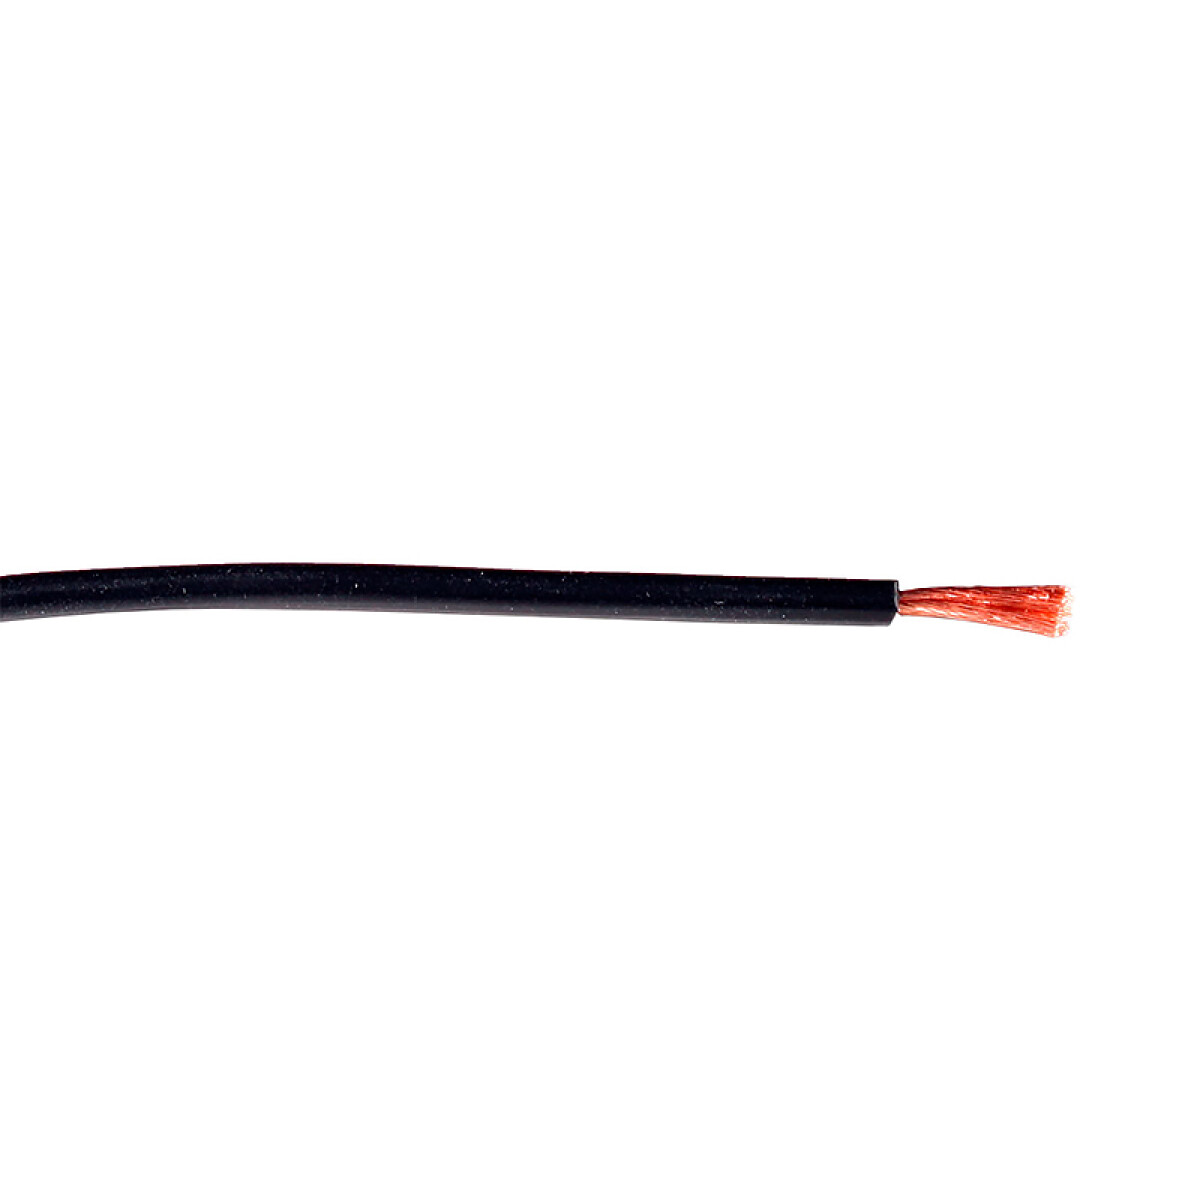 Cable de cobre flexible 2,5 mm² negro -Rollo 100mt - N03033 